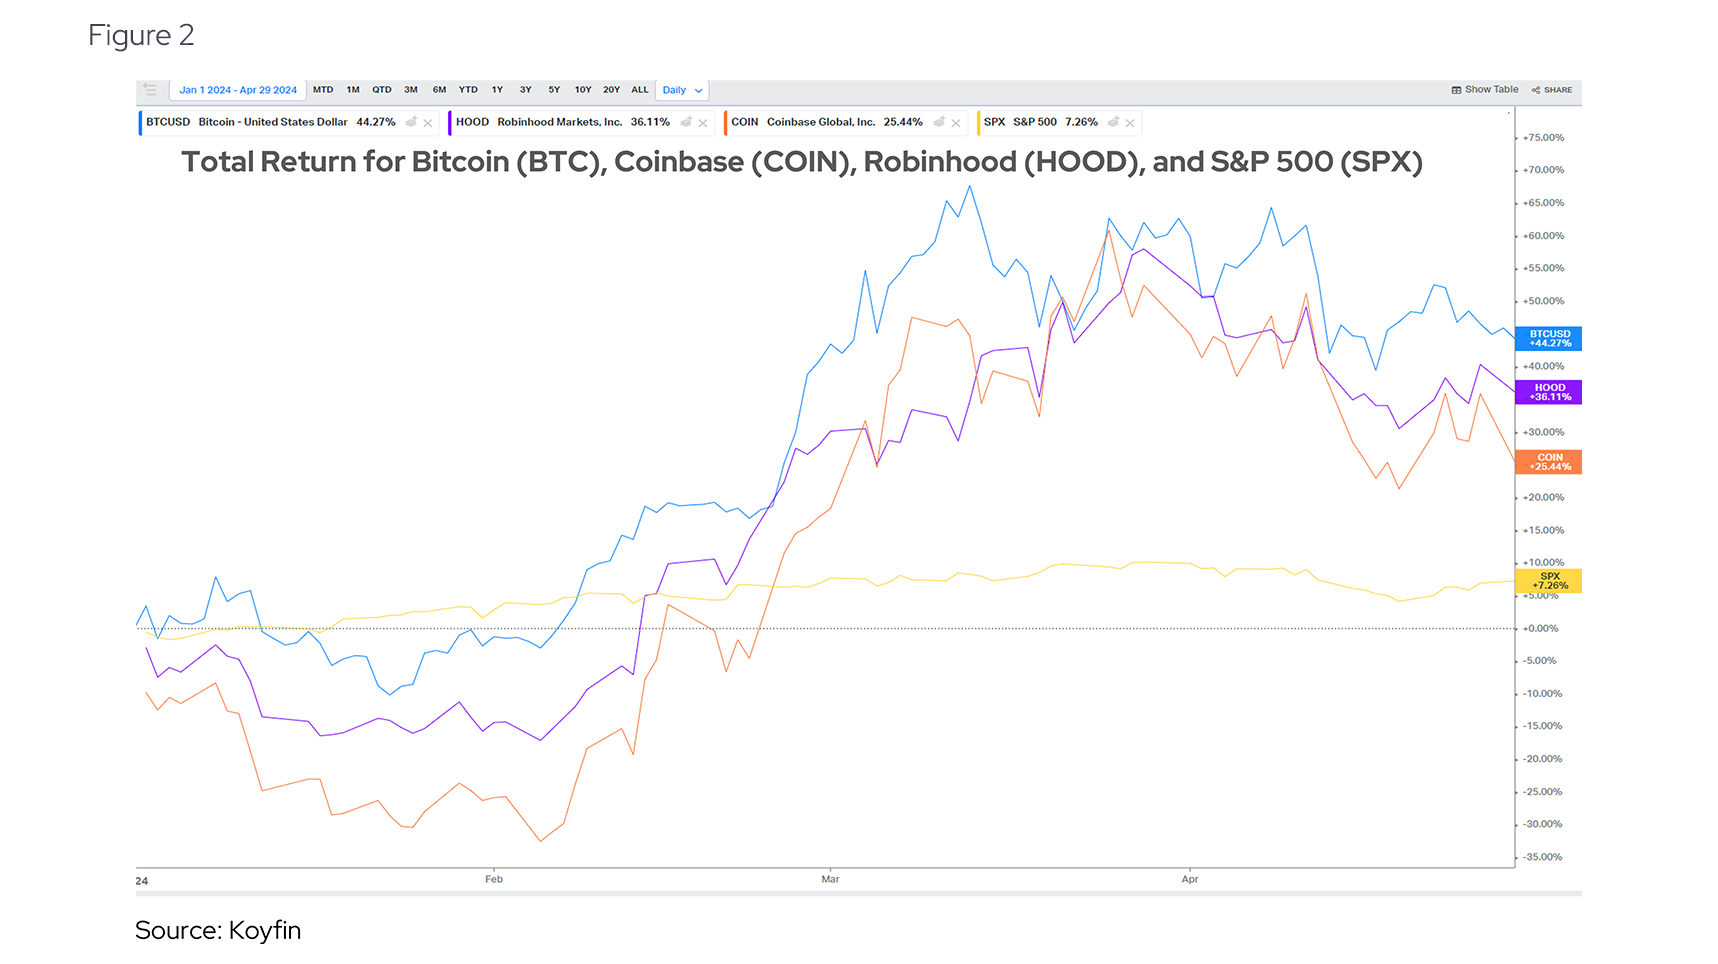 Total Return for Bitcoin (BTC), Coinbase (COIN), Robinhood (HOOD), and S&P 500 (SPX)